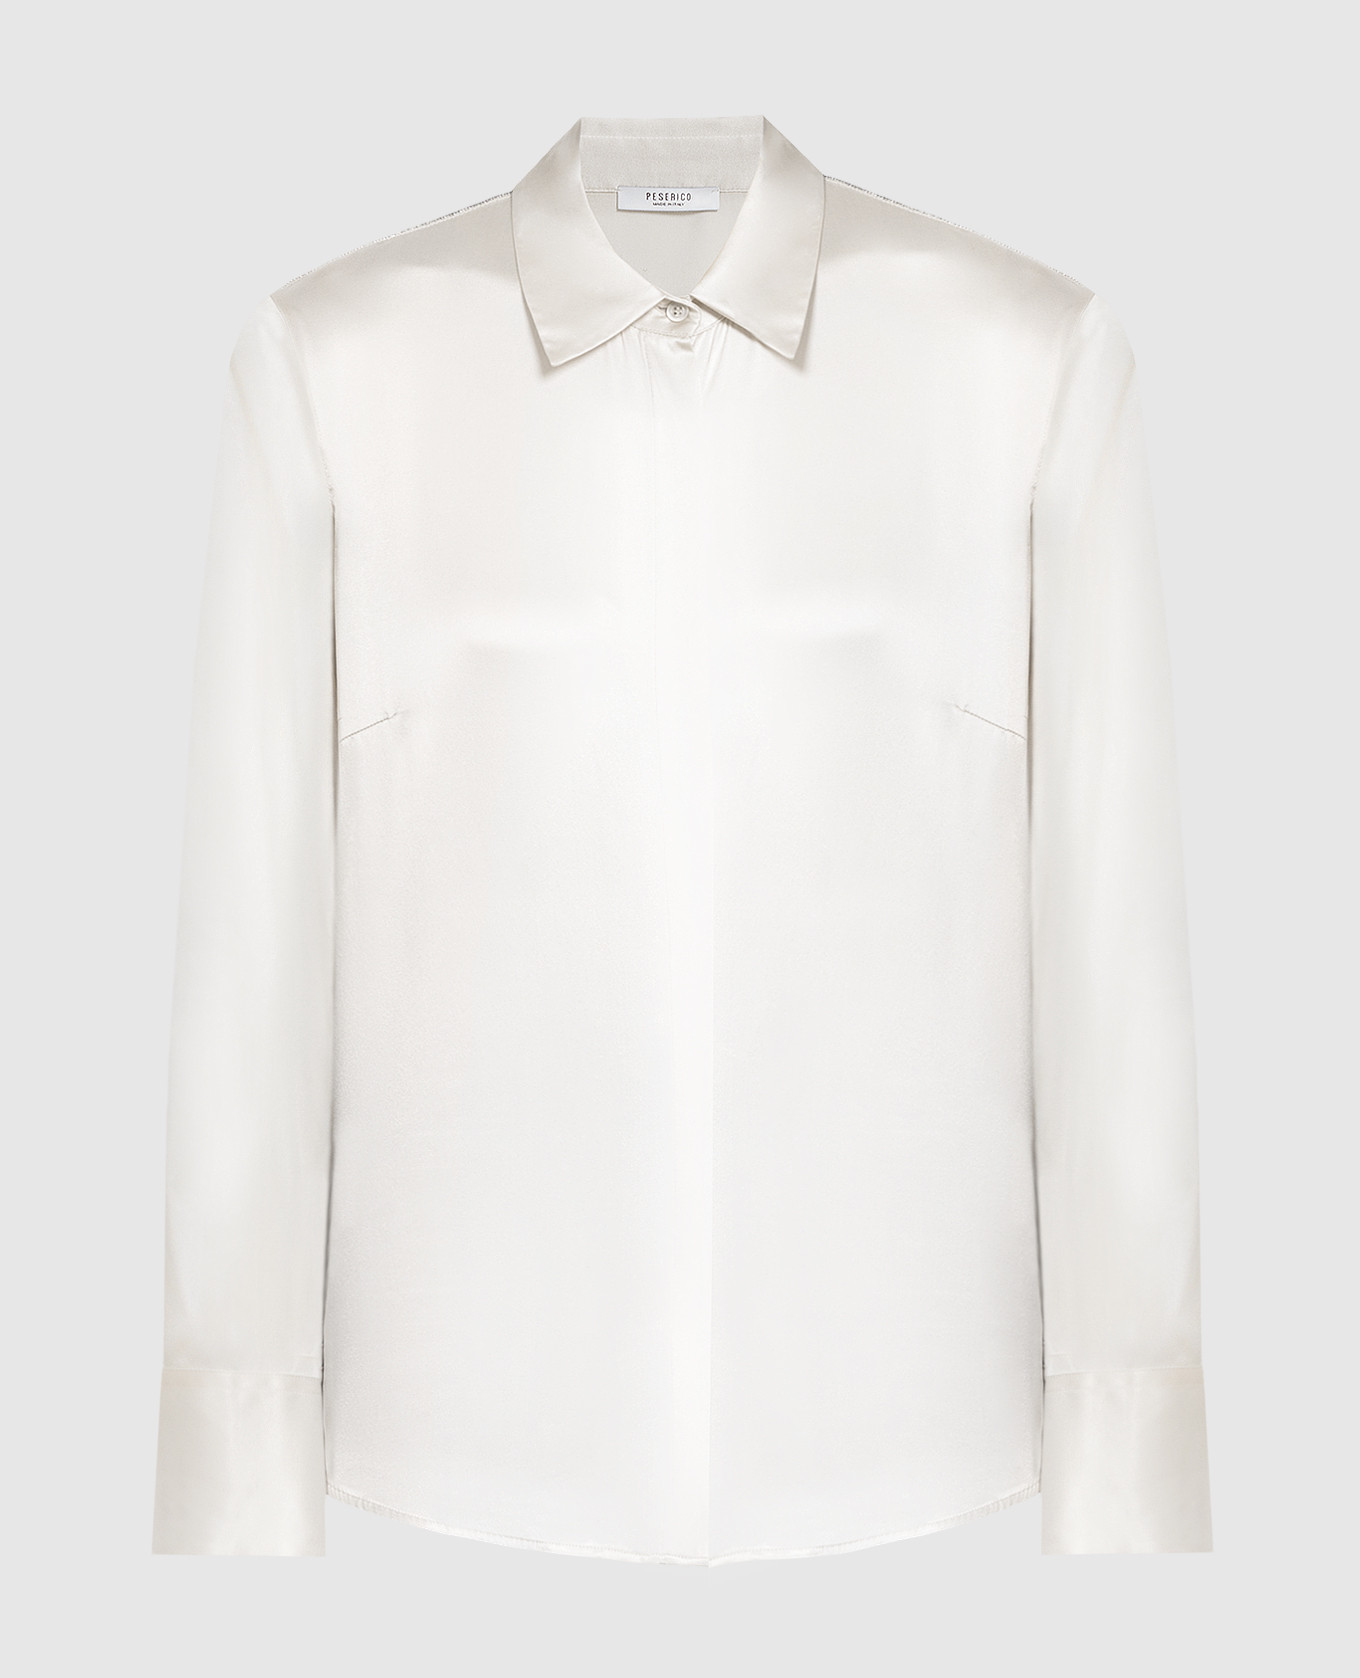 White silk shirt with monil chain